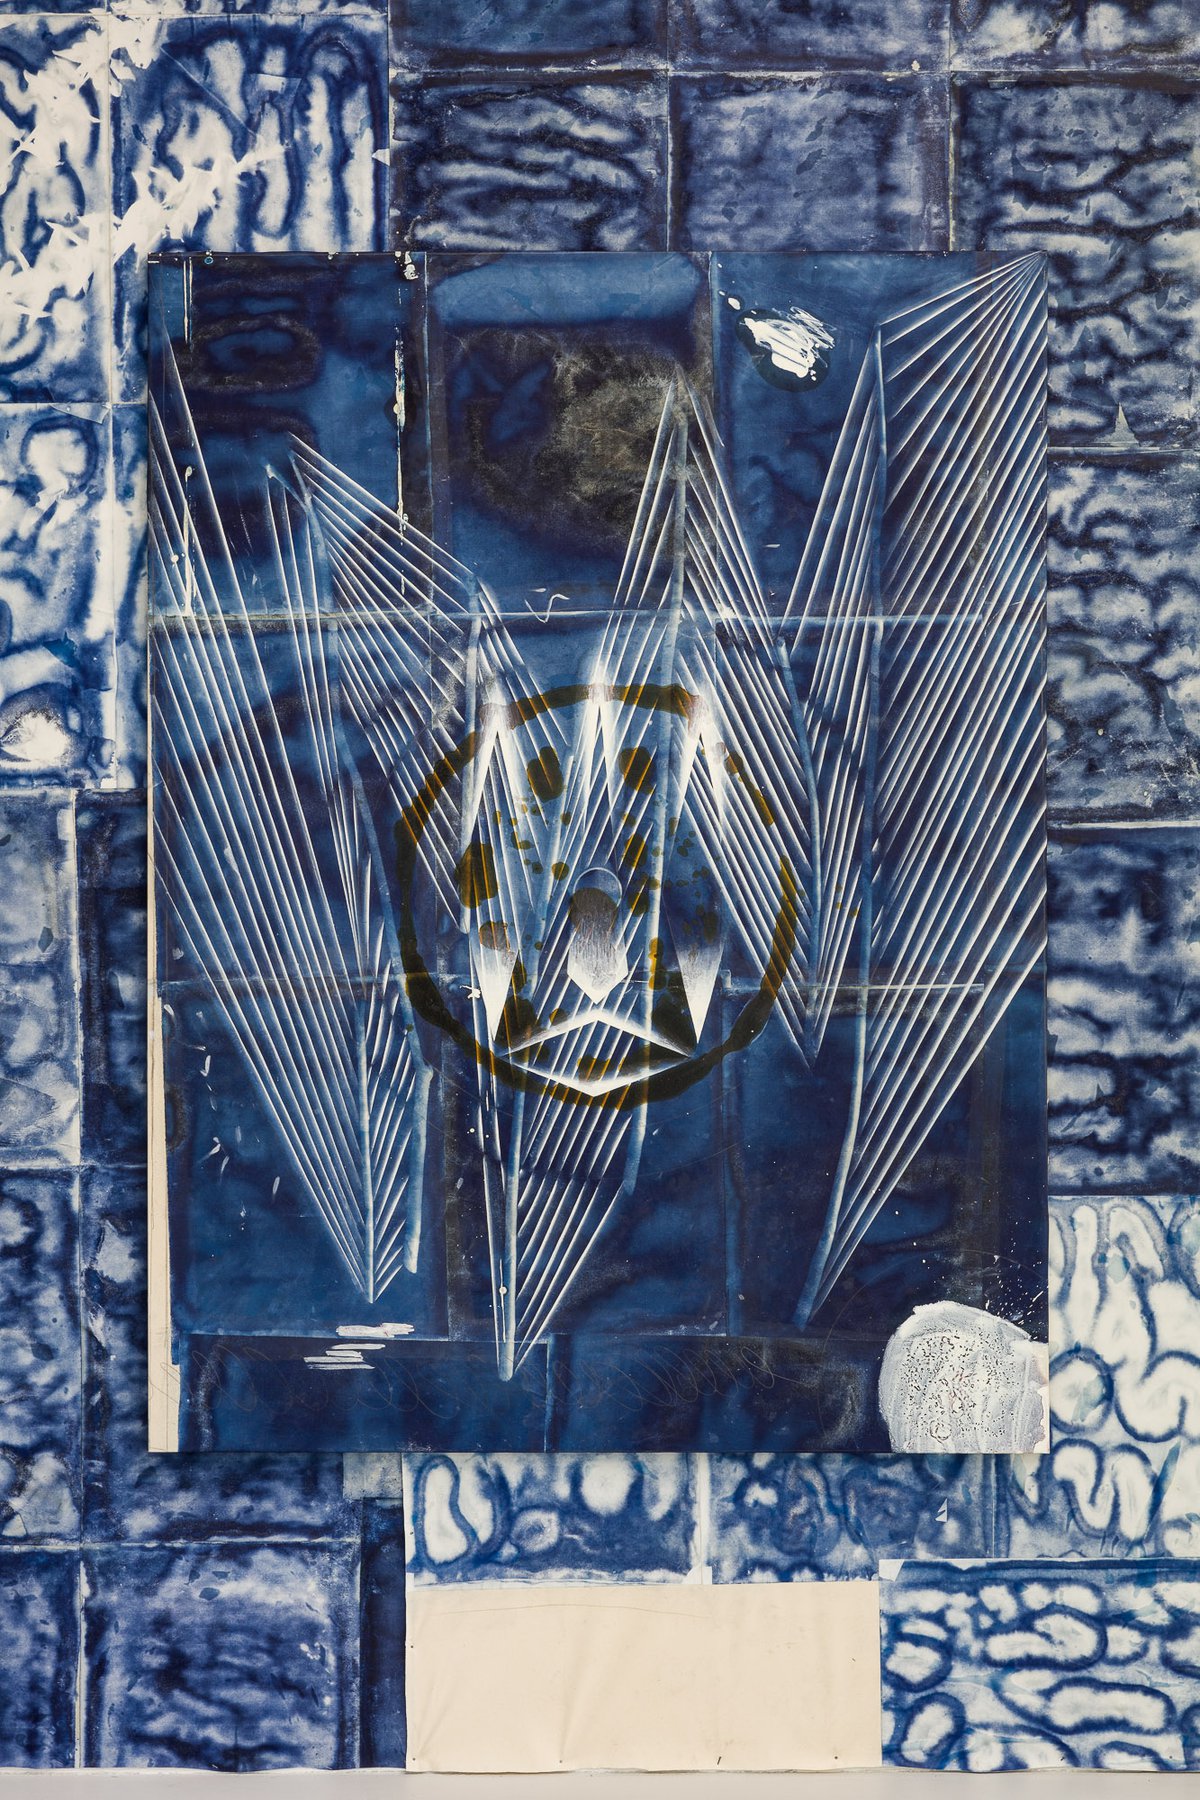 Tillman KaiserThis, 2021Oil/eggtempera on cyanotype on paper/canvas200 x 150 cm